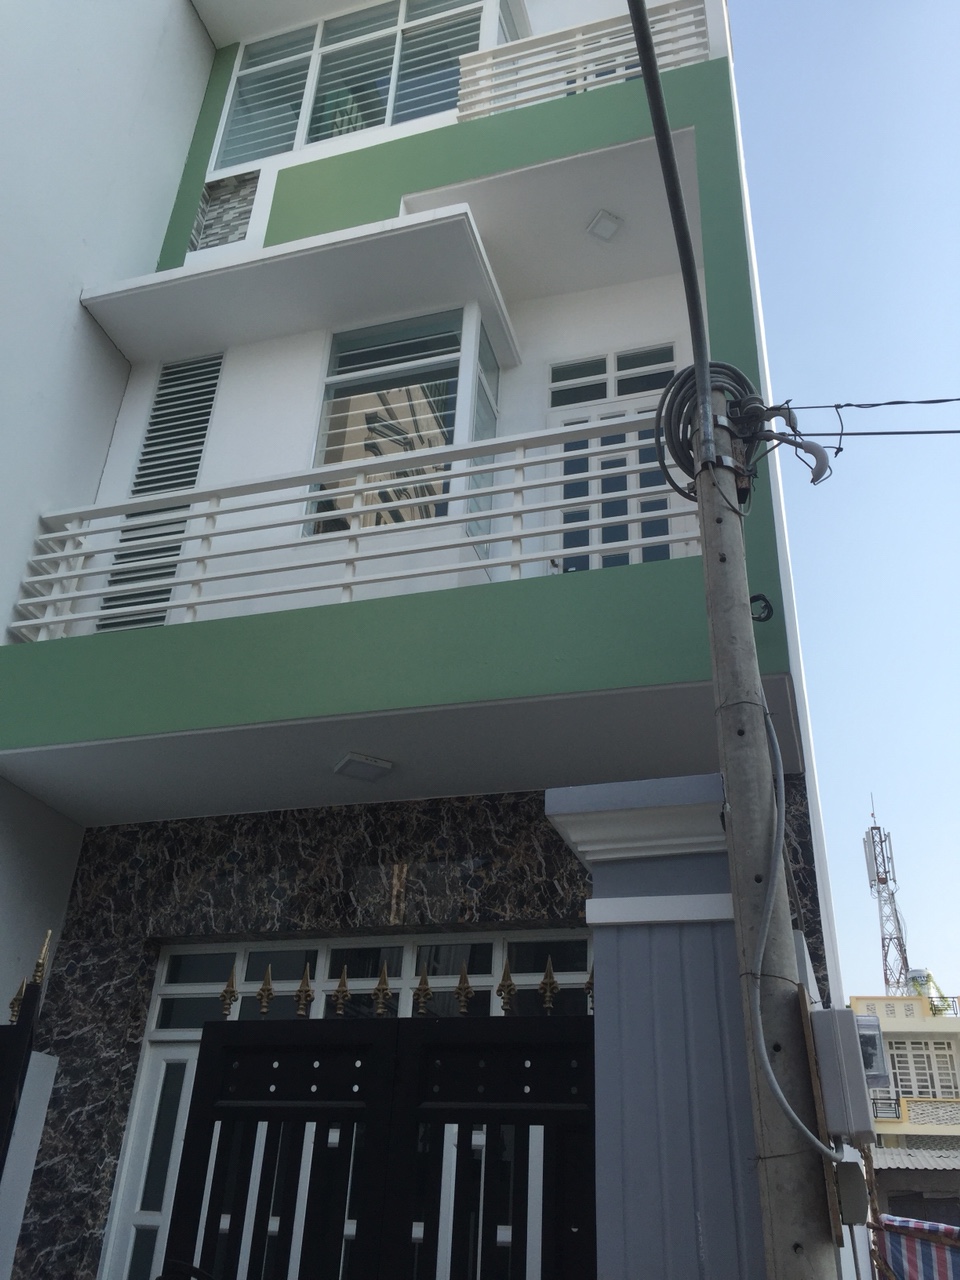 Cần bán nhà mới, đẹp hẻm 1135 Huỳnh Tấn Phát, Quận 7, DT 4x16m, 3 lầu. Giá 4,2 tỷ